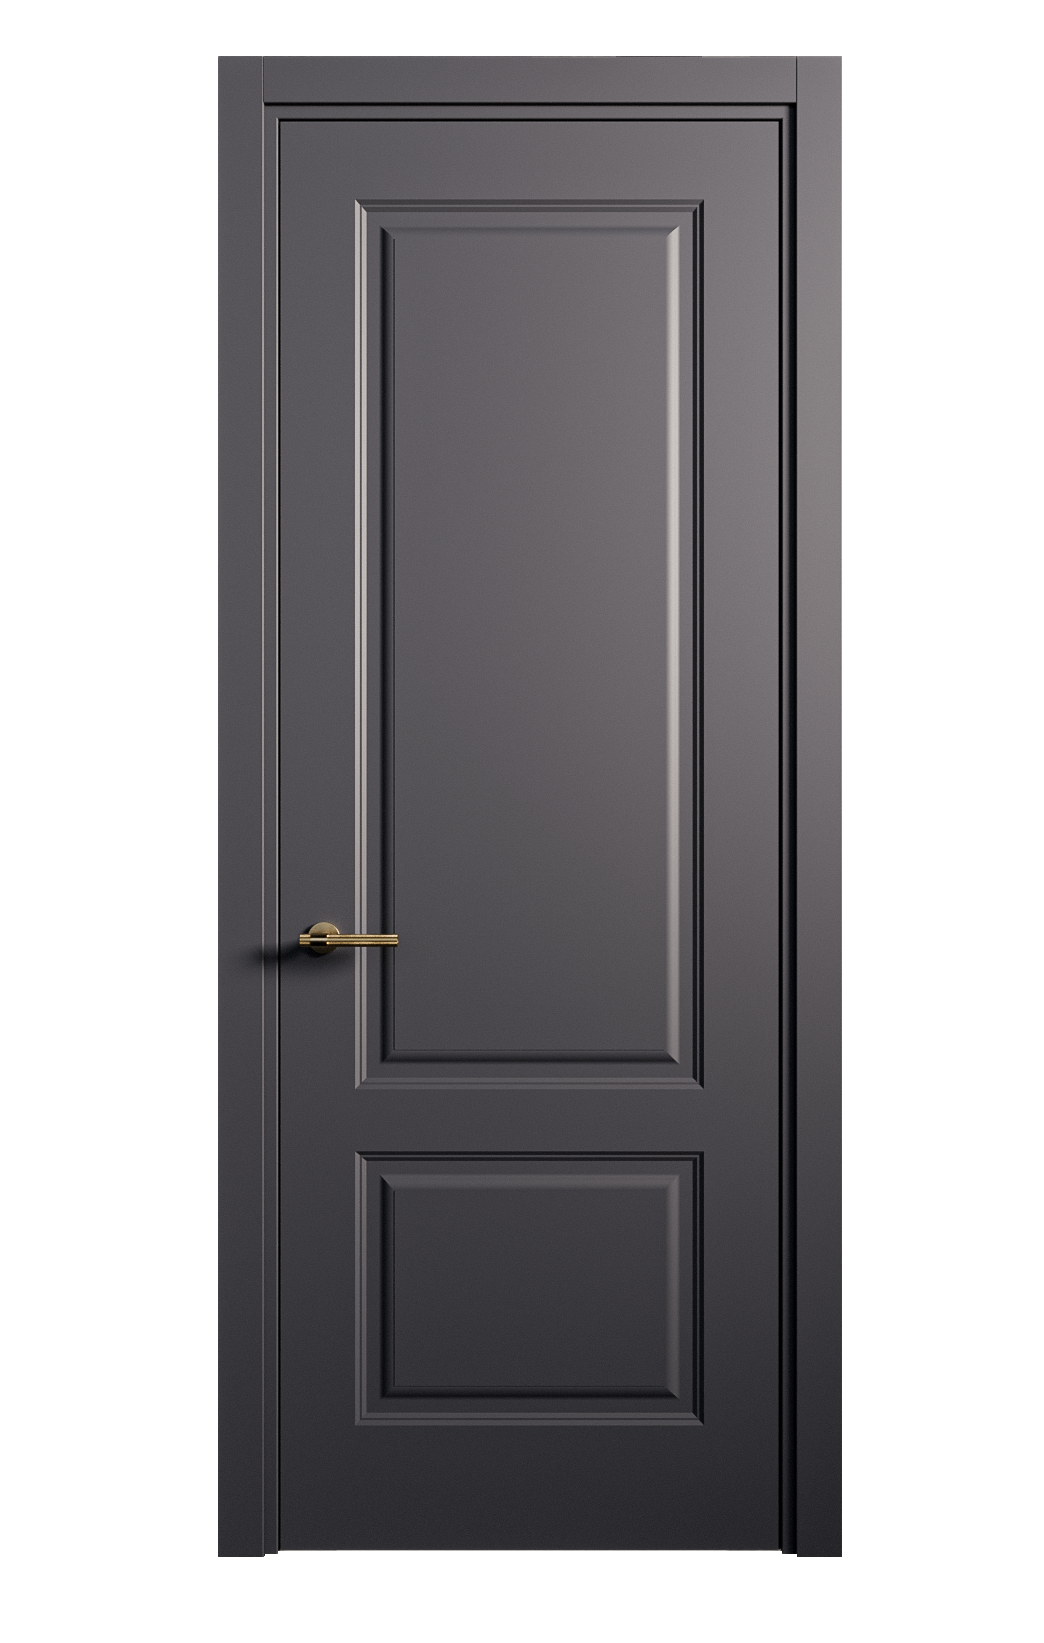 Межкомнатная дверь Вита-1 глухая эмаль ral 7024 26235